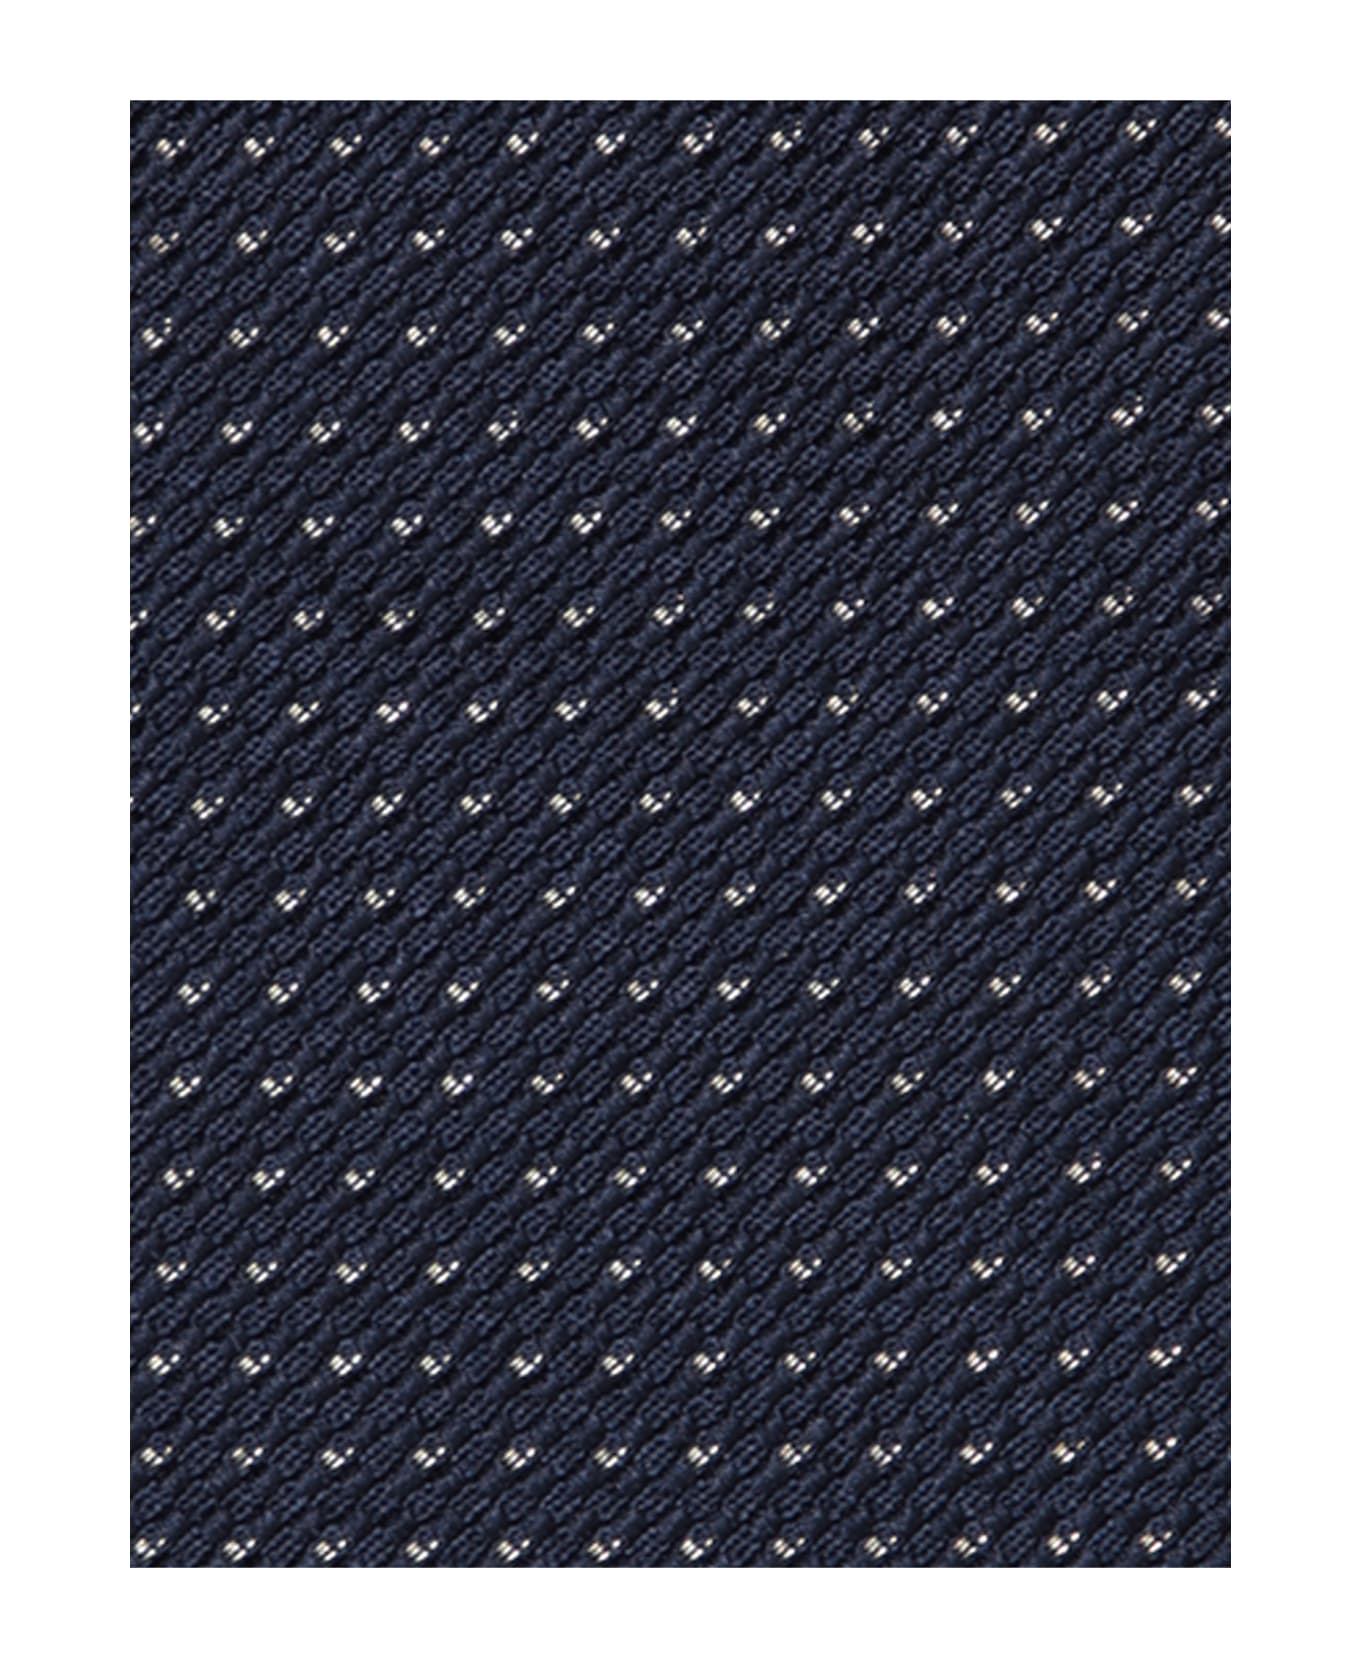 Brioni Micropattern Dark Blue/gold Tie - Blue